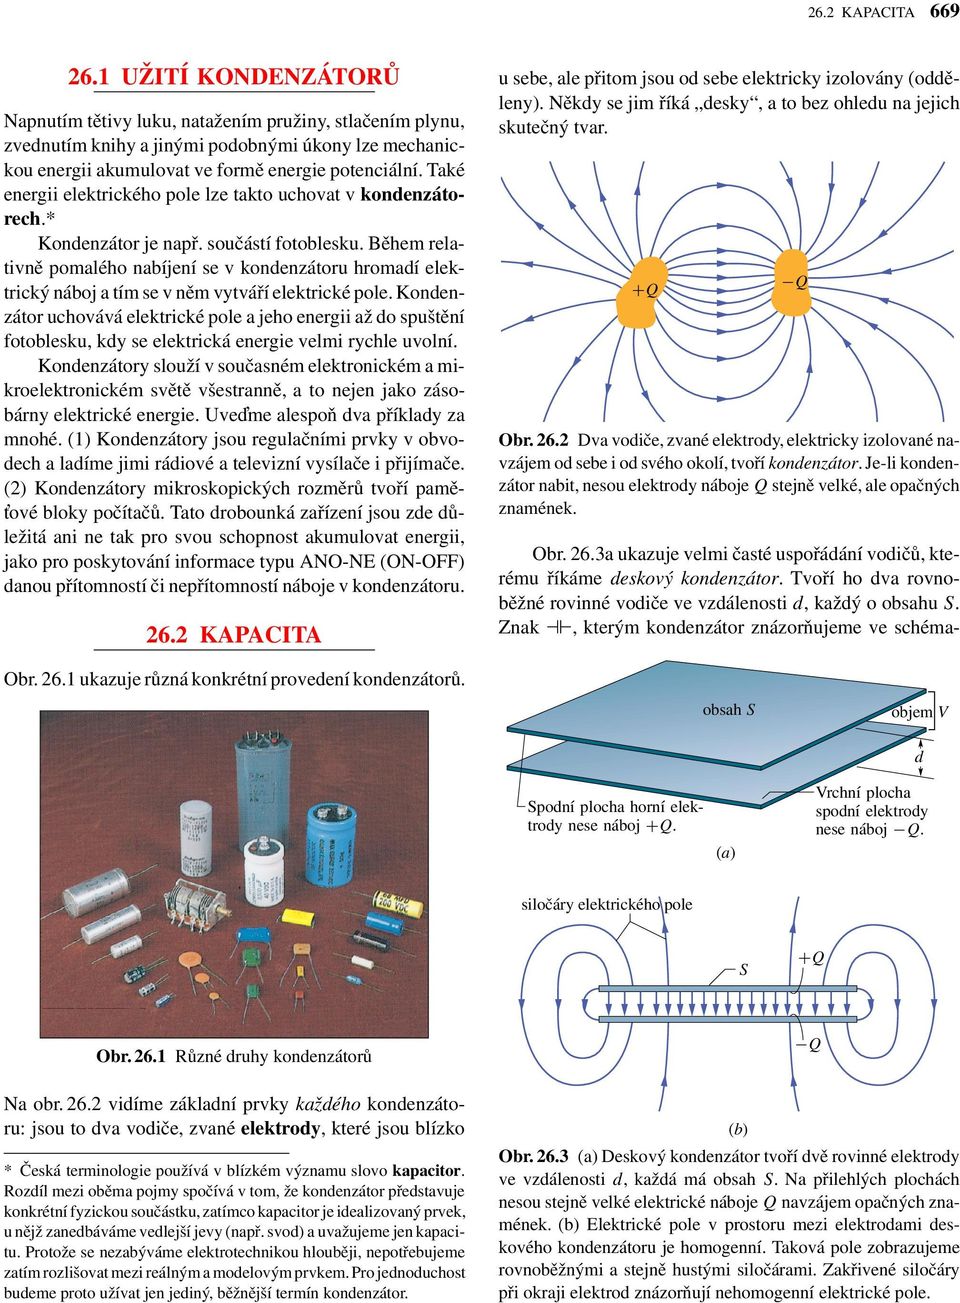 Také energii elektrického pole lze takto uchovat v konenzátorech.* Konenzátor je např. součástí fotoblesku.